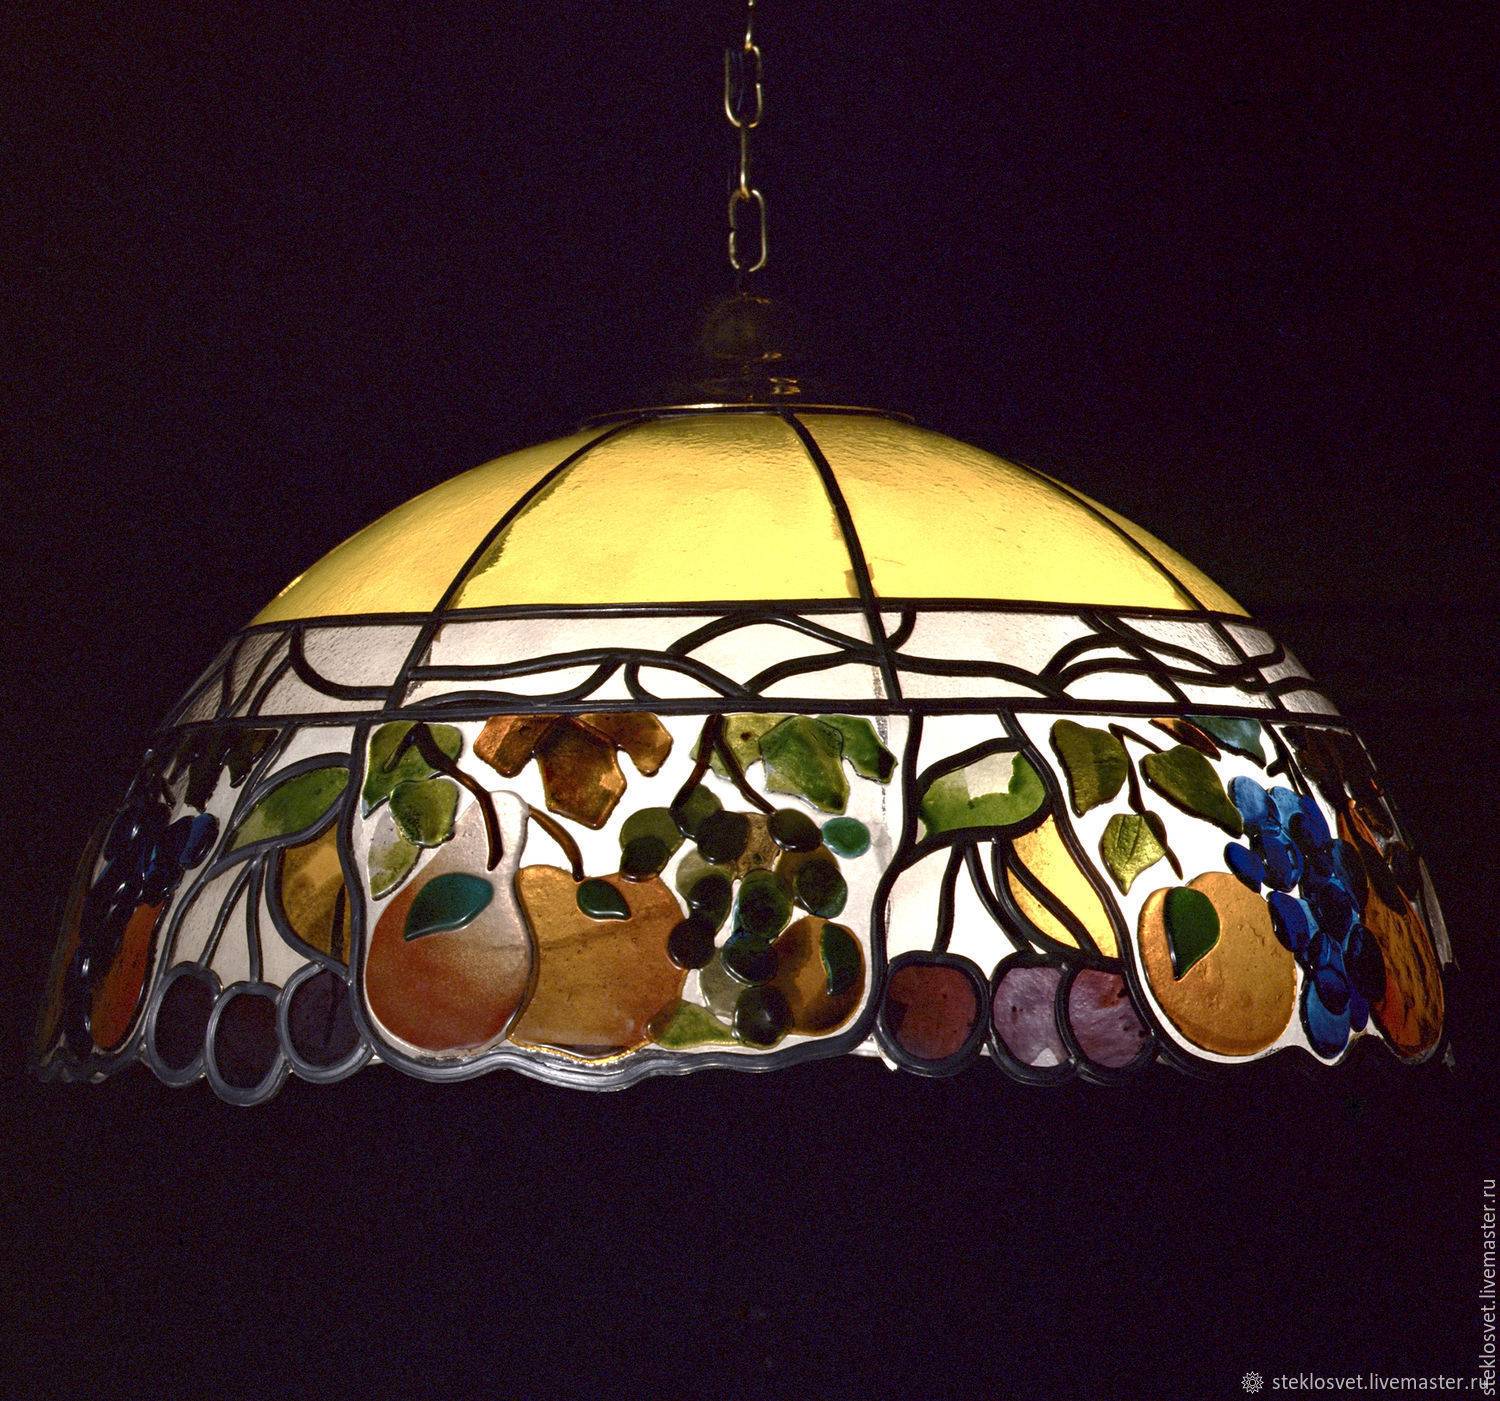 Украшения из муранского стекла (фото). муранское стекло - что это такое?